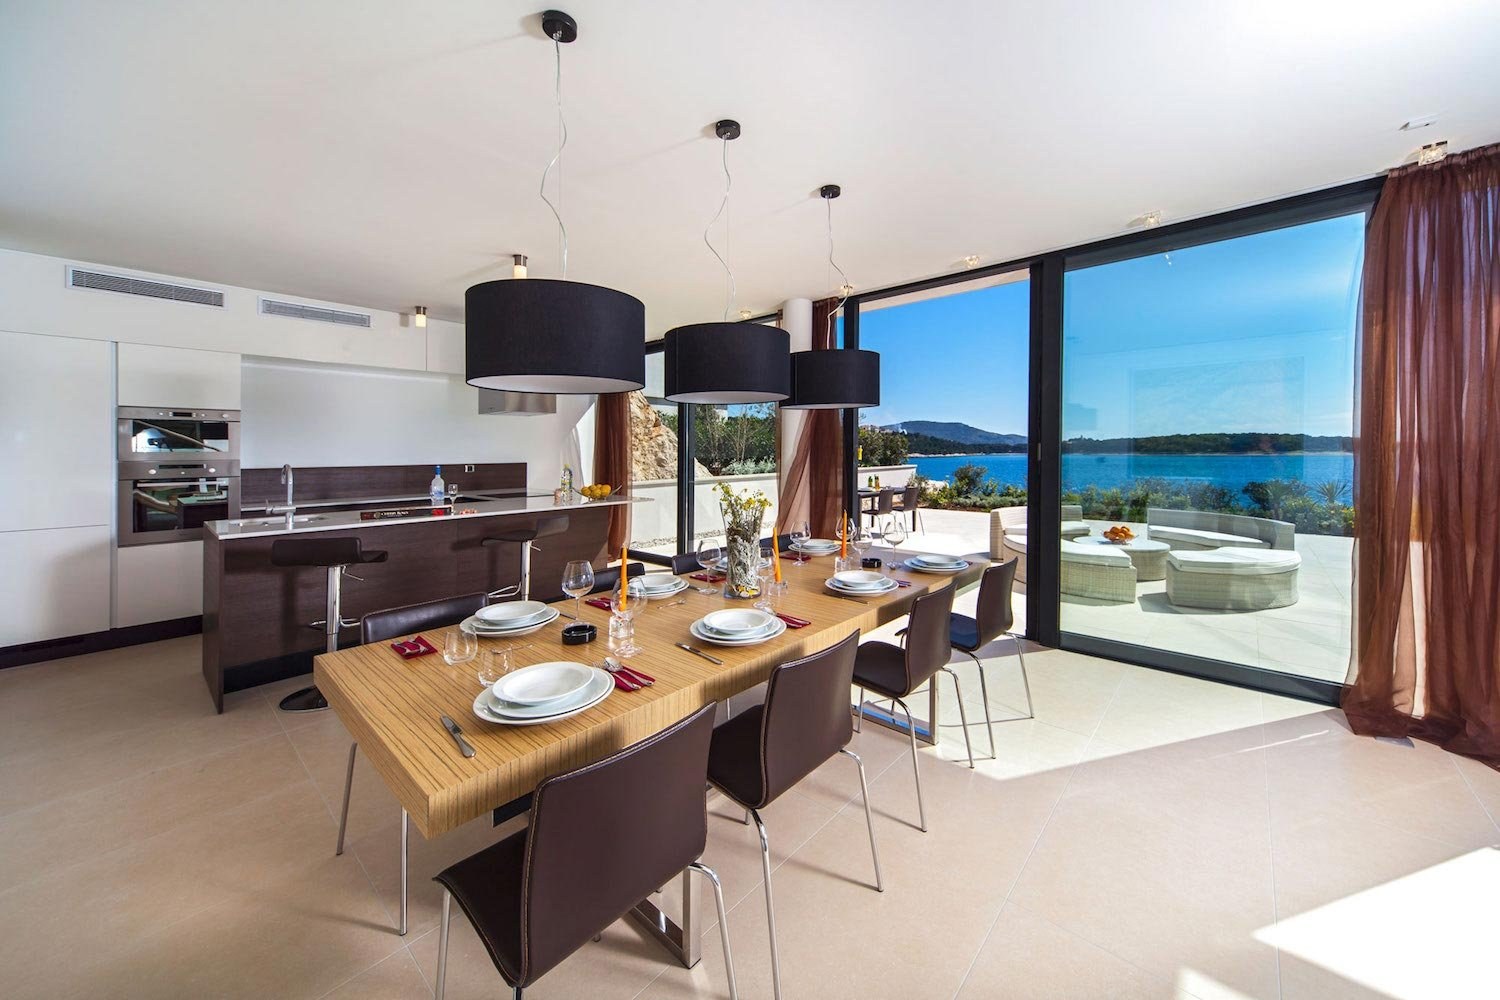 Столовая море. Кухня столовая с панорамными окнами. Кухня с видом на море. Кухня гостиная с панорамными окнами. Кухня современная с видом на море.